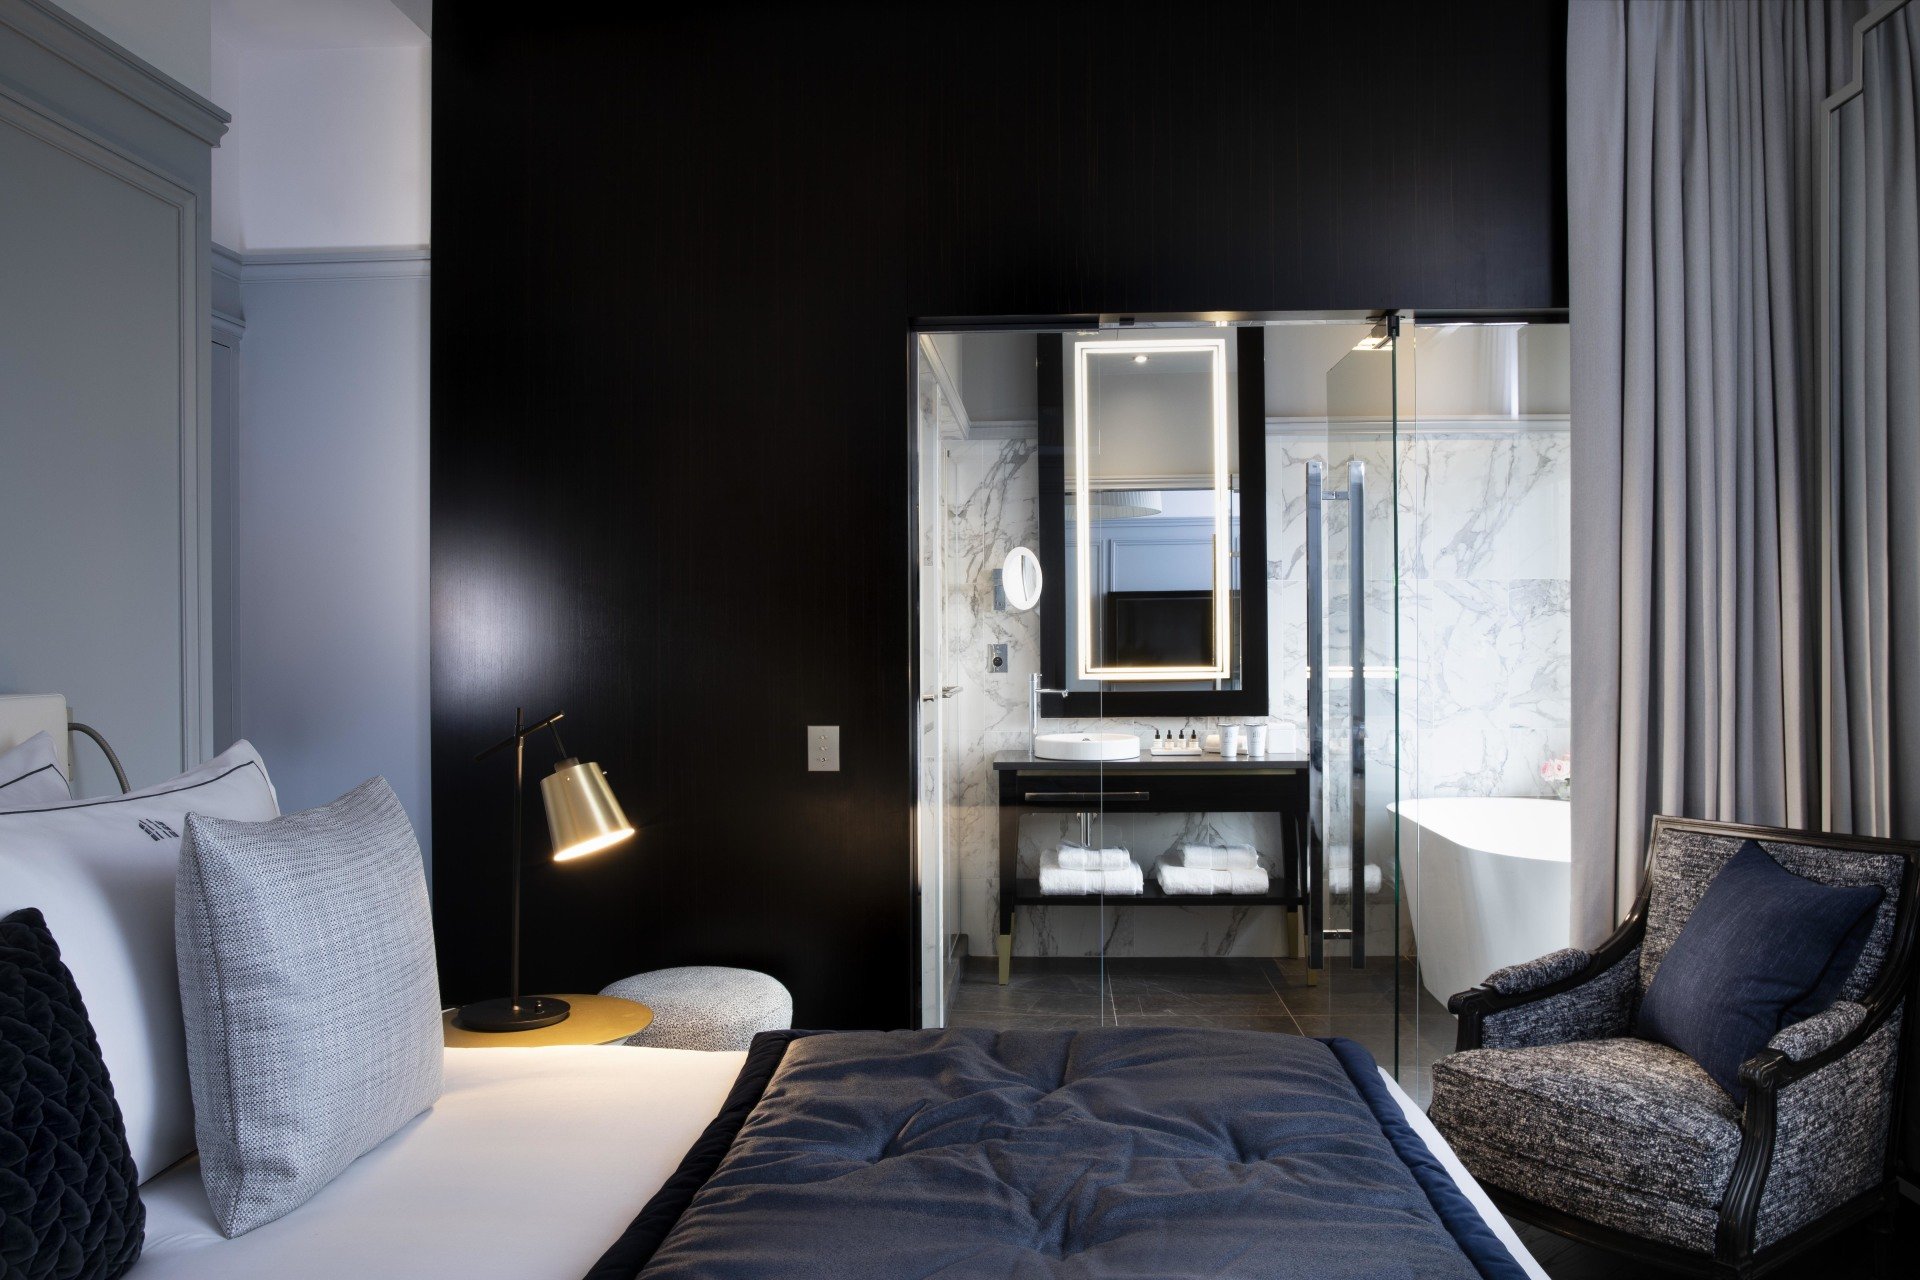 Hotel et Spa Le Damantin Paris - hôtel de luxe designé par le studio d'architecture d'intérieur jean-philippe nuel - chambre design équipée avec lit, fauteuil design, salle de bain ouverte